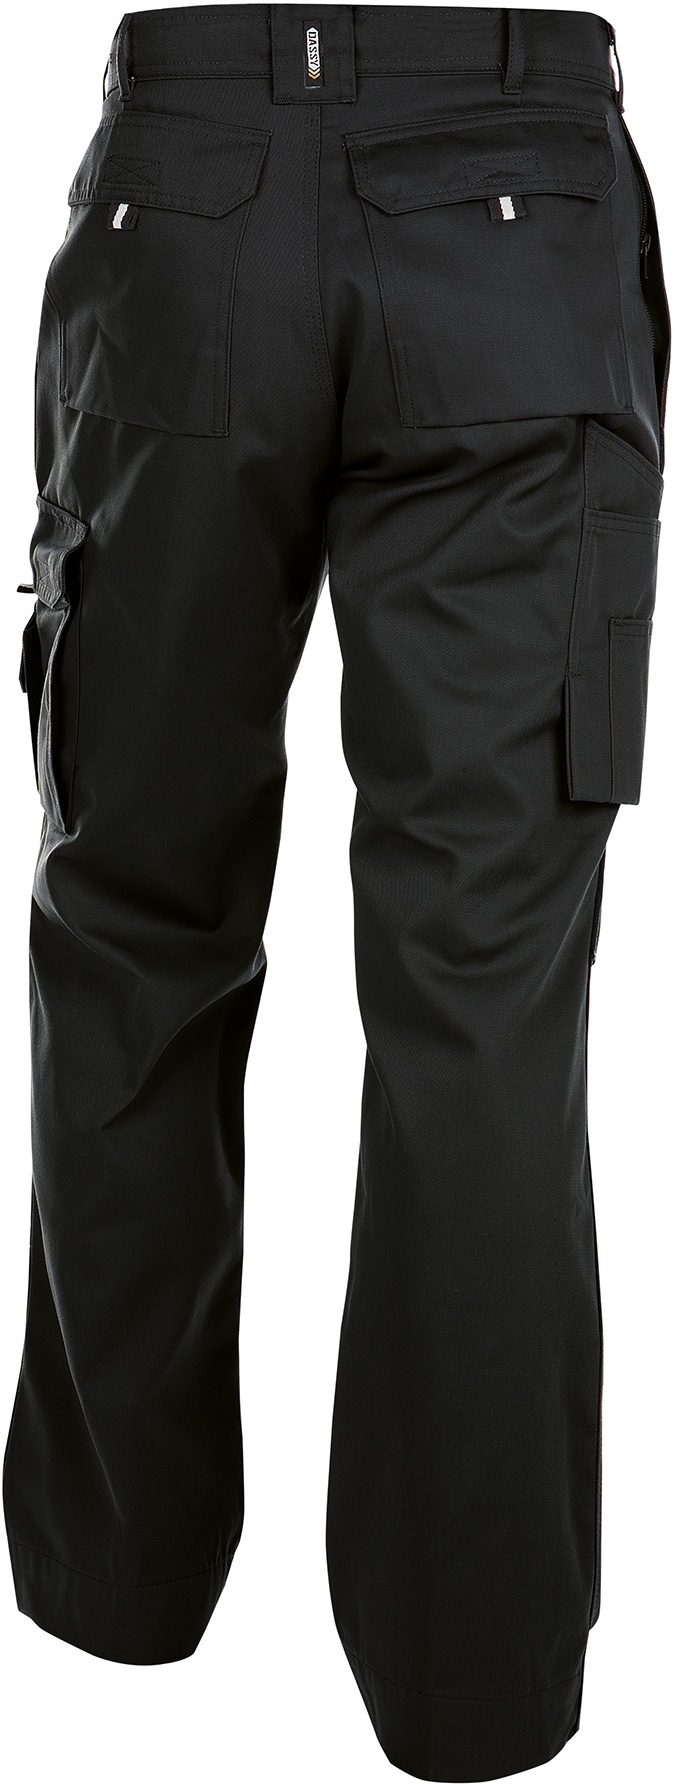 DASSY® Miami Bundhose Baumwolle 320 gr. Bundhose mit Kniepolstertaschen - schwarz - 64